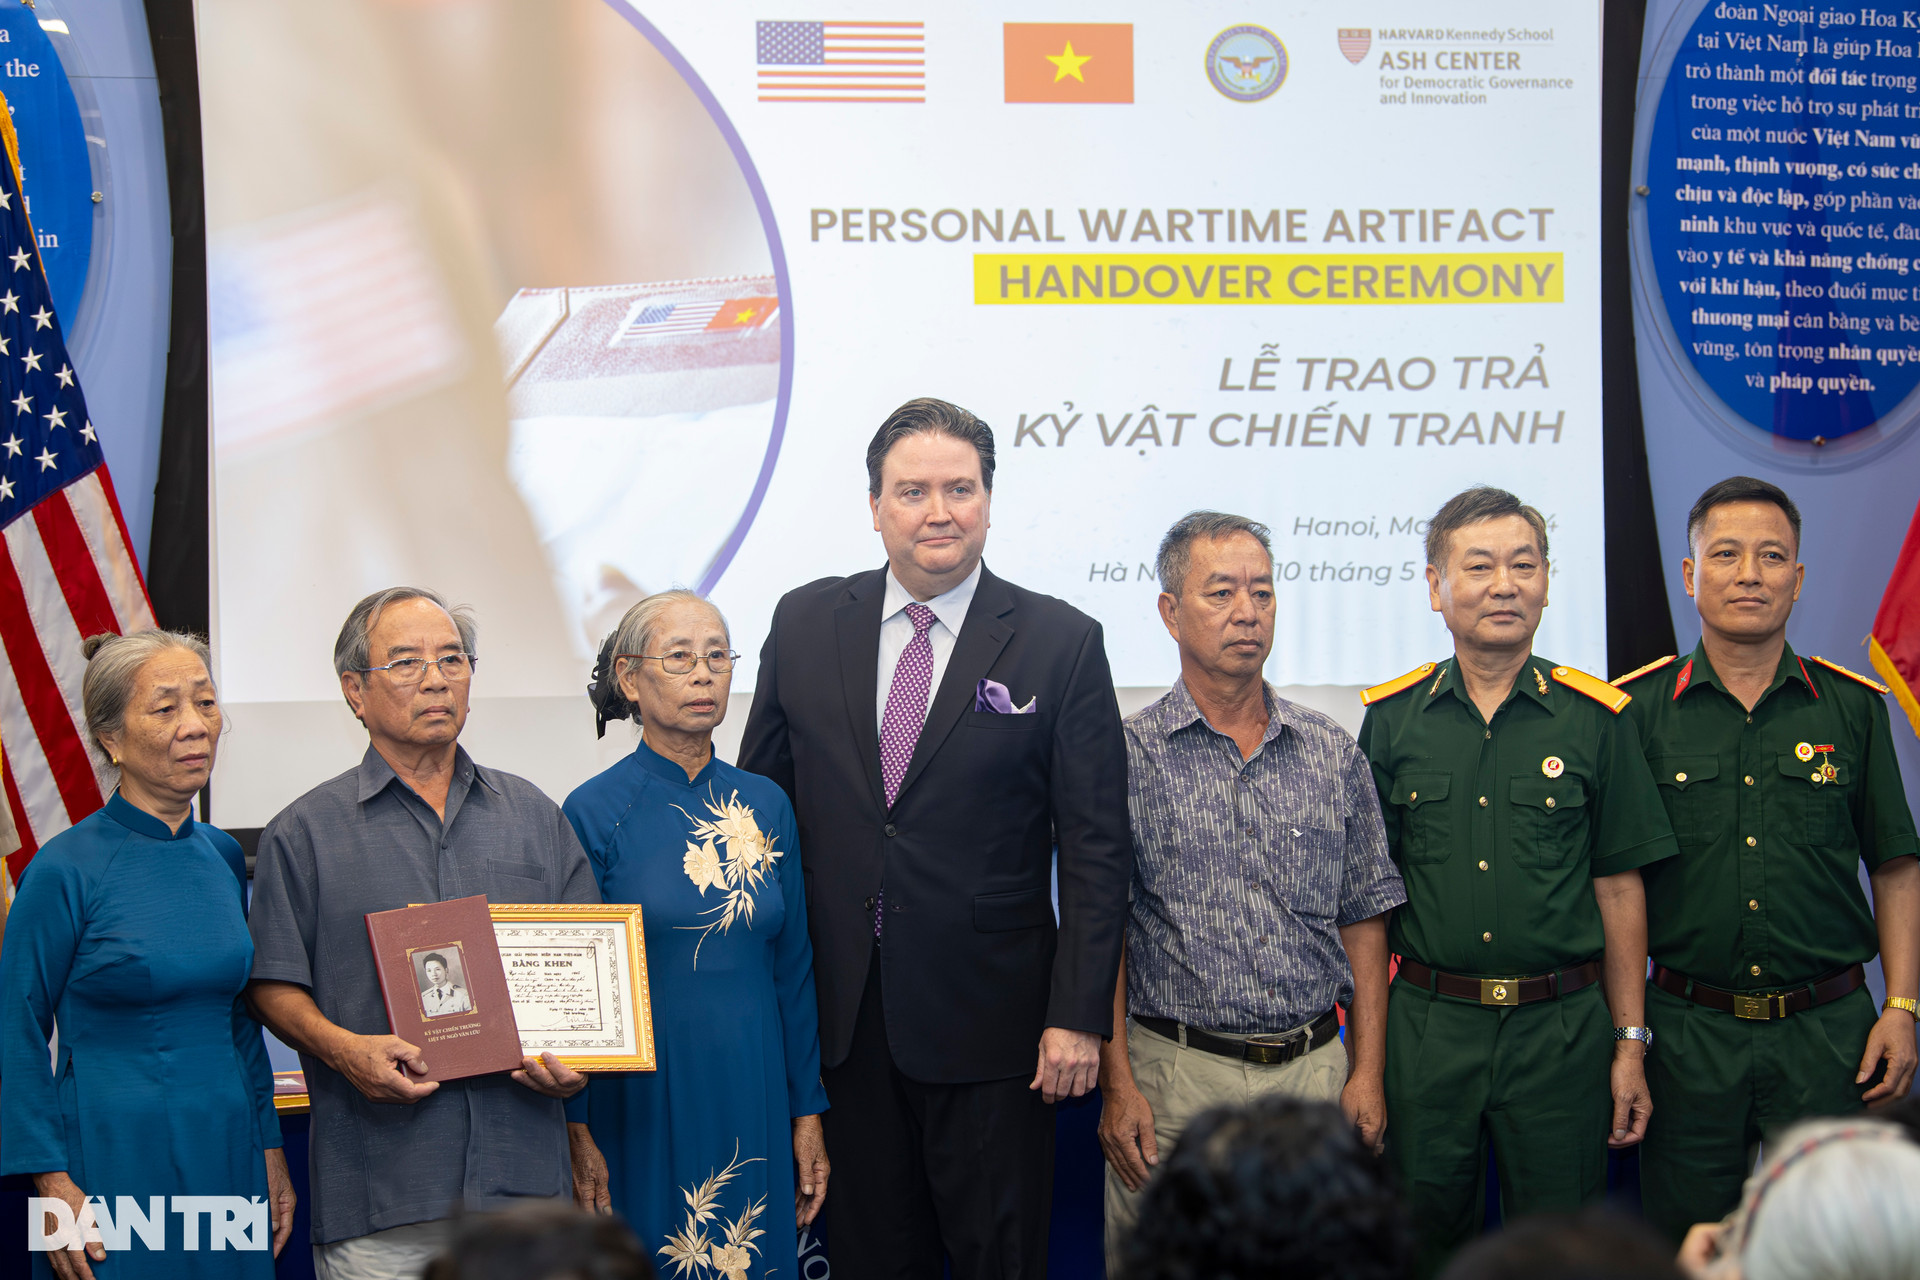 Đại sứ Mỹ chia sẻ khoảnh khắc xúc động khi trao trả kỷ vật chiến tranh - 2